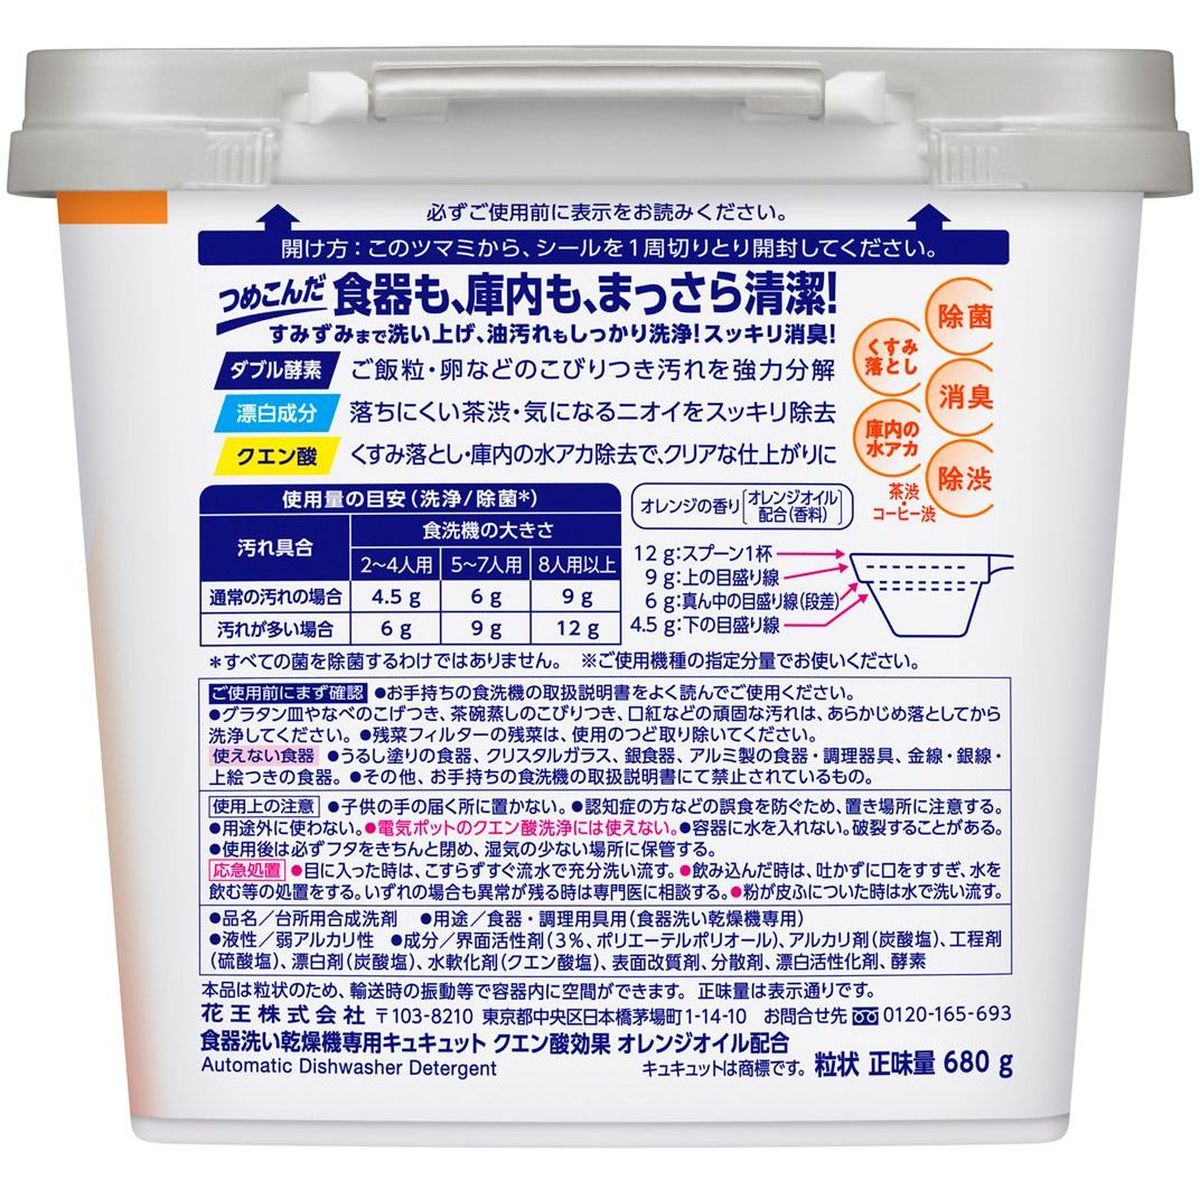 食器洗い乾燥機専用 キュキュットクエン酸効果 オレンジオイル配合 本体 680g